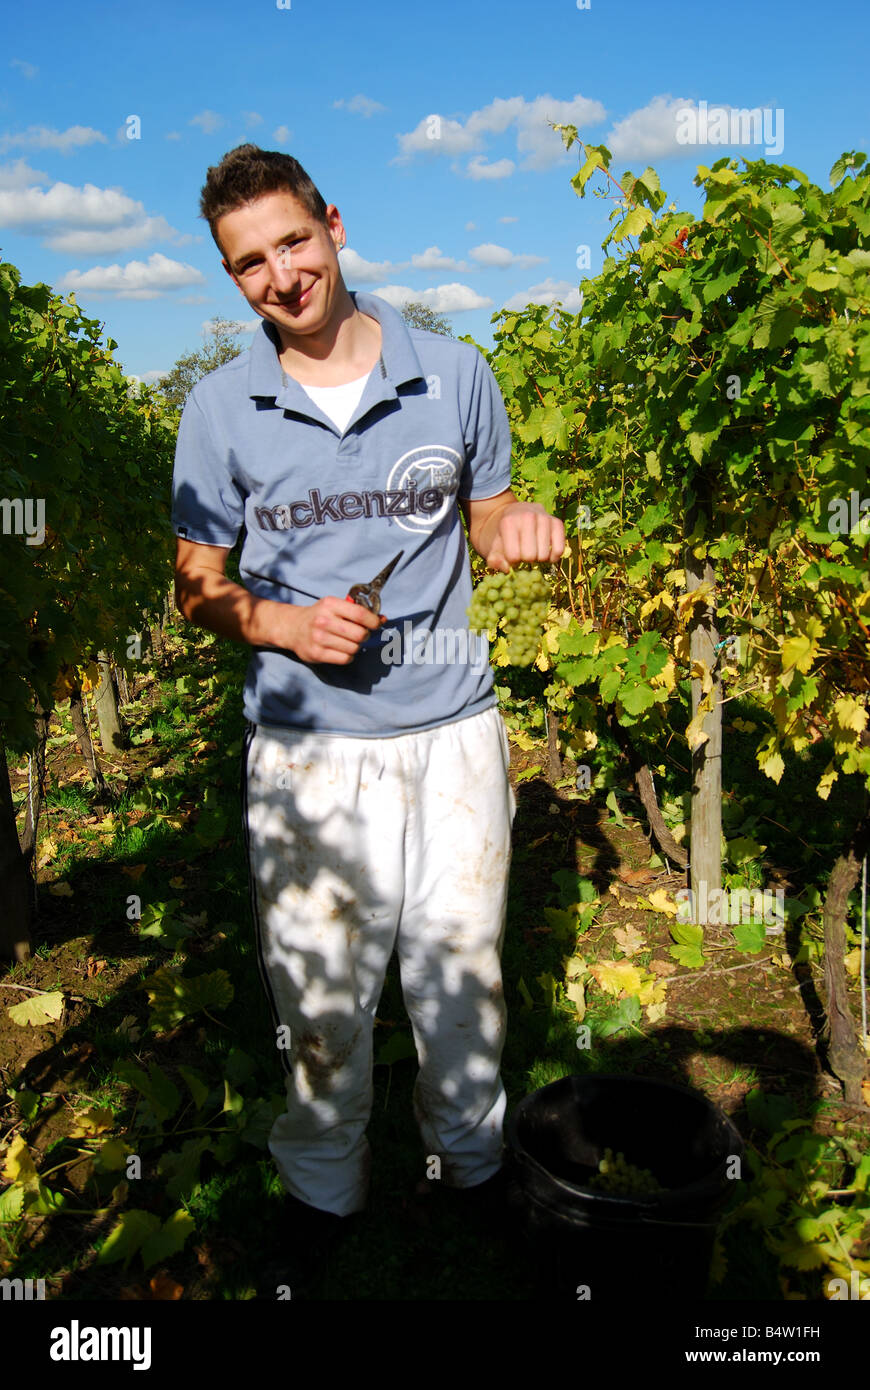 Travailleur homme picking grapes, Lamberhurst Vineyard, Lamberhurst, Lamberhurst, Kent, Royaume-Uni Banque D'Images